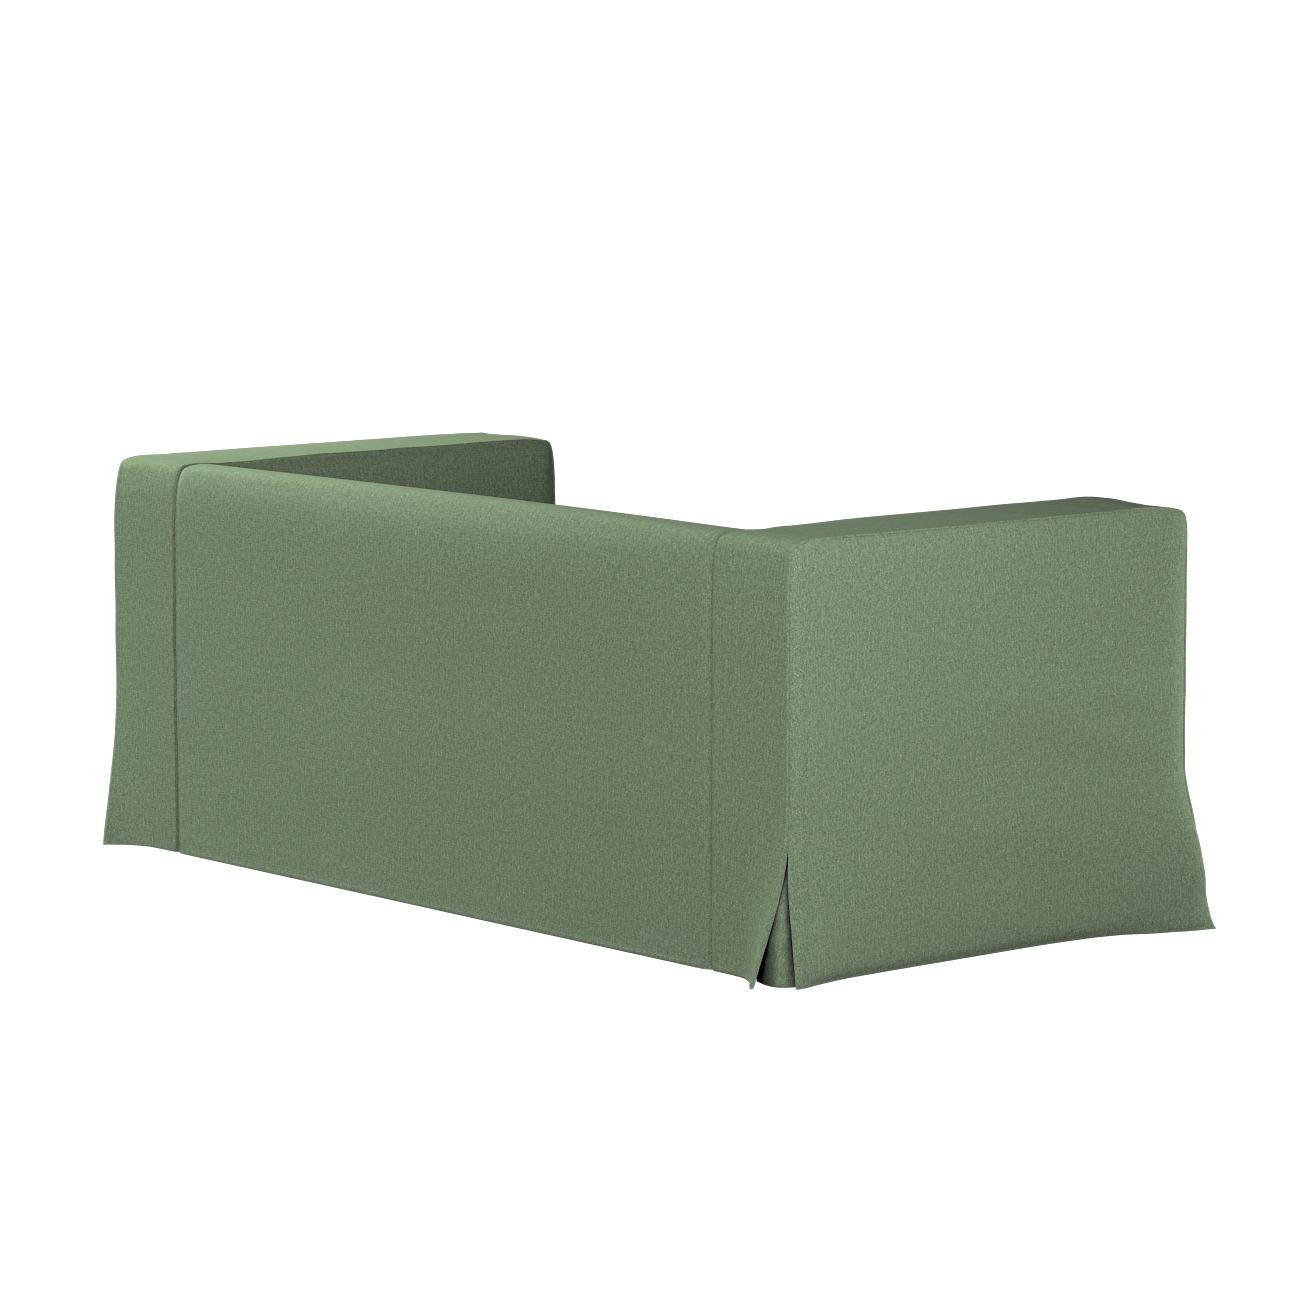 Bezug für Klippan 2-Sitzer Sofa, lang mit Kellerfalte, grün, Klippan 2-er, günstig online kaufen